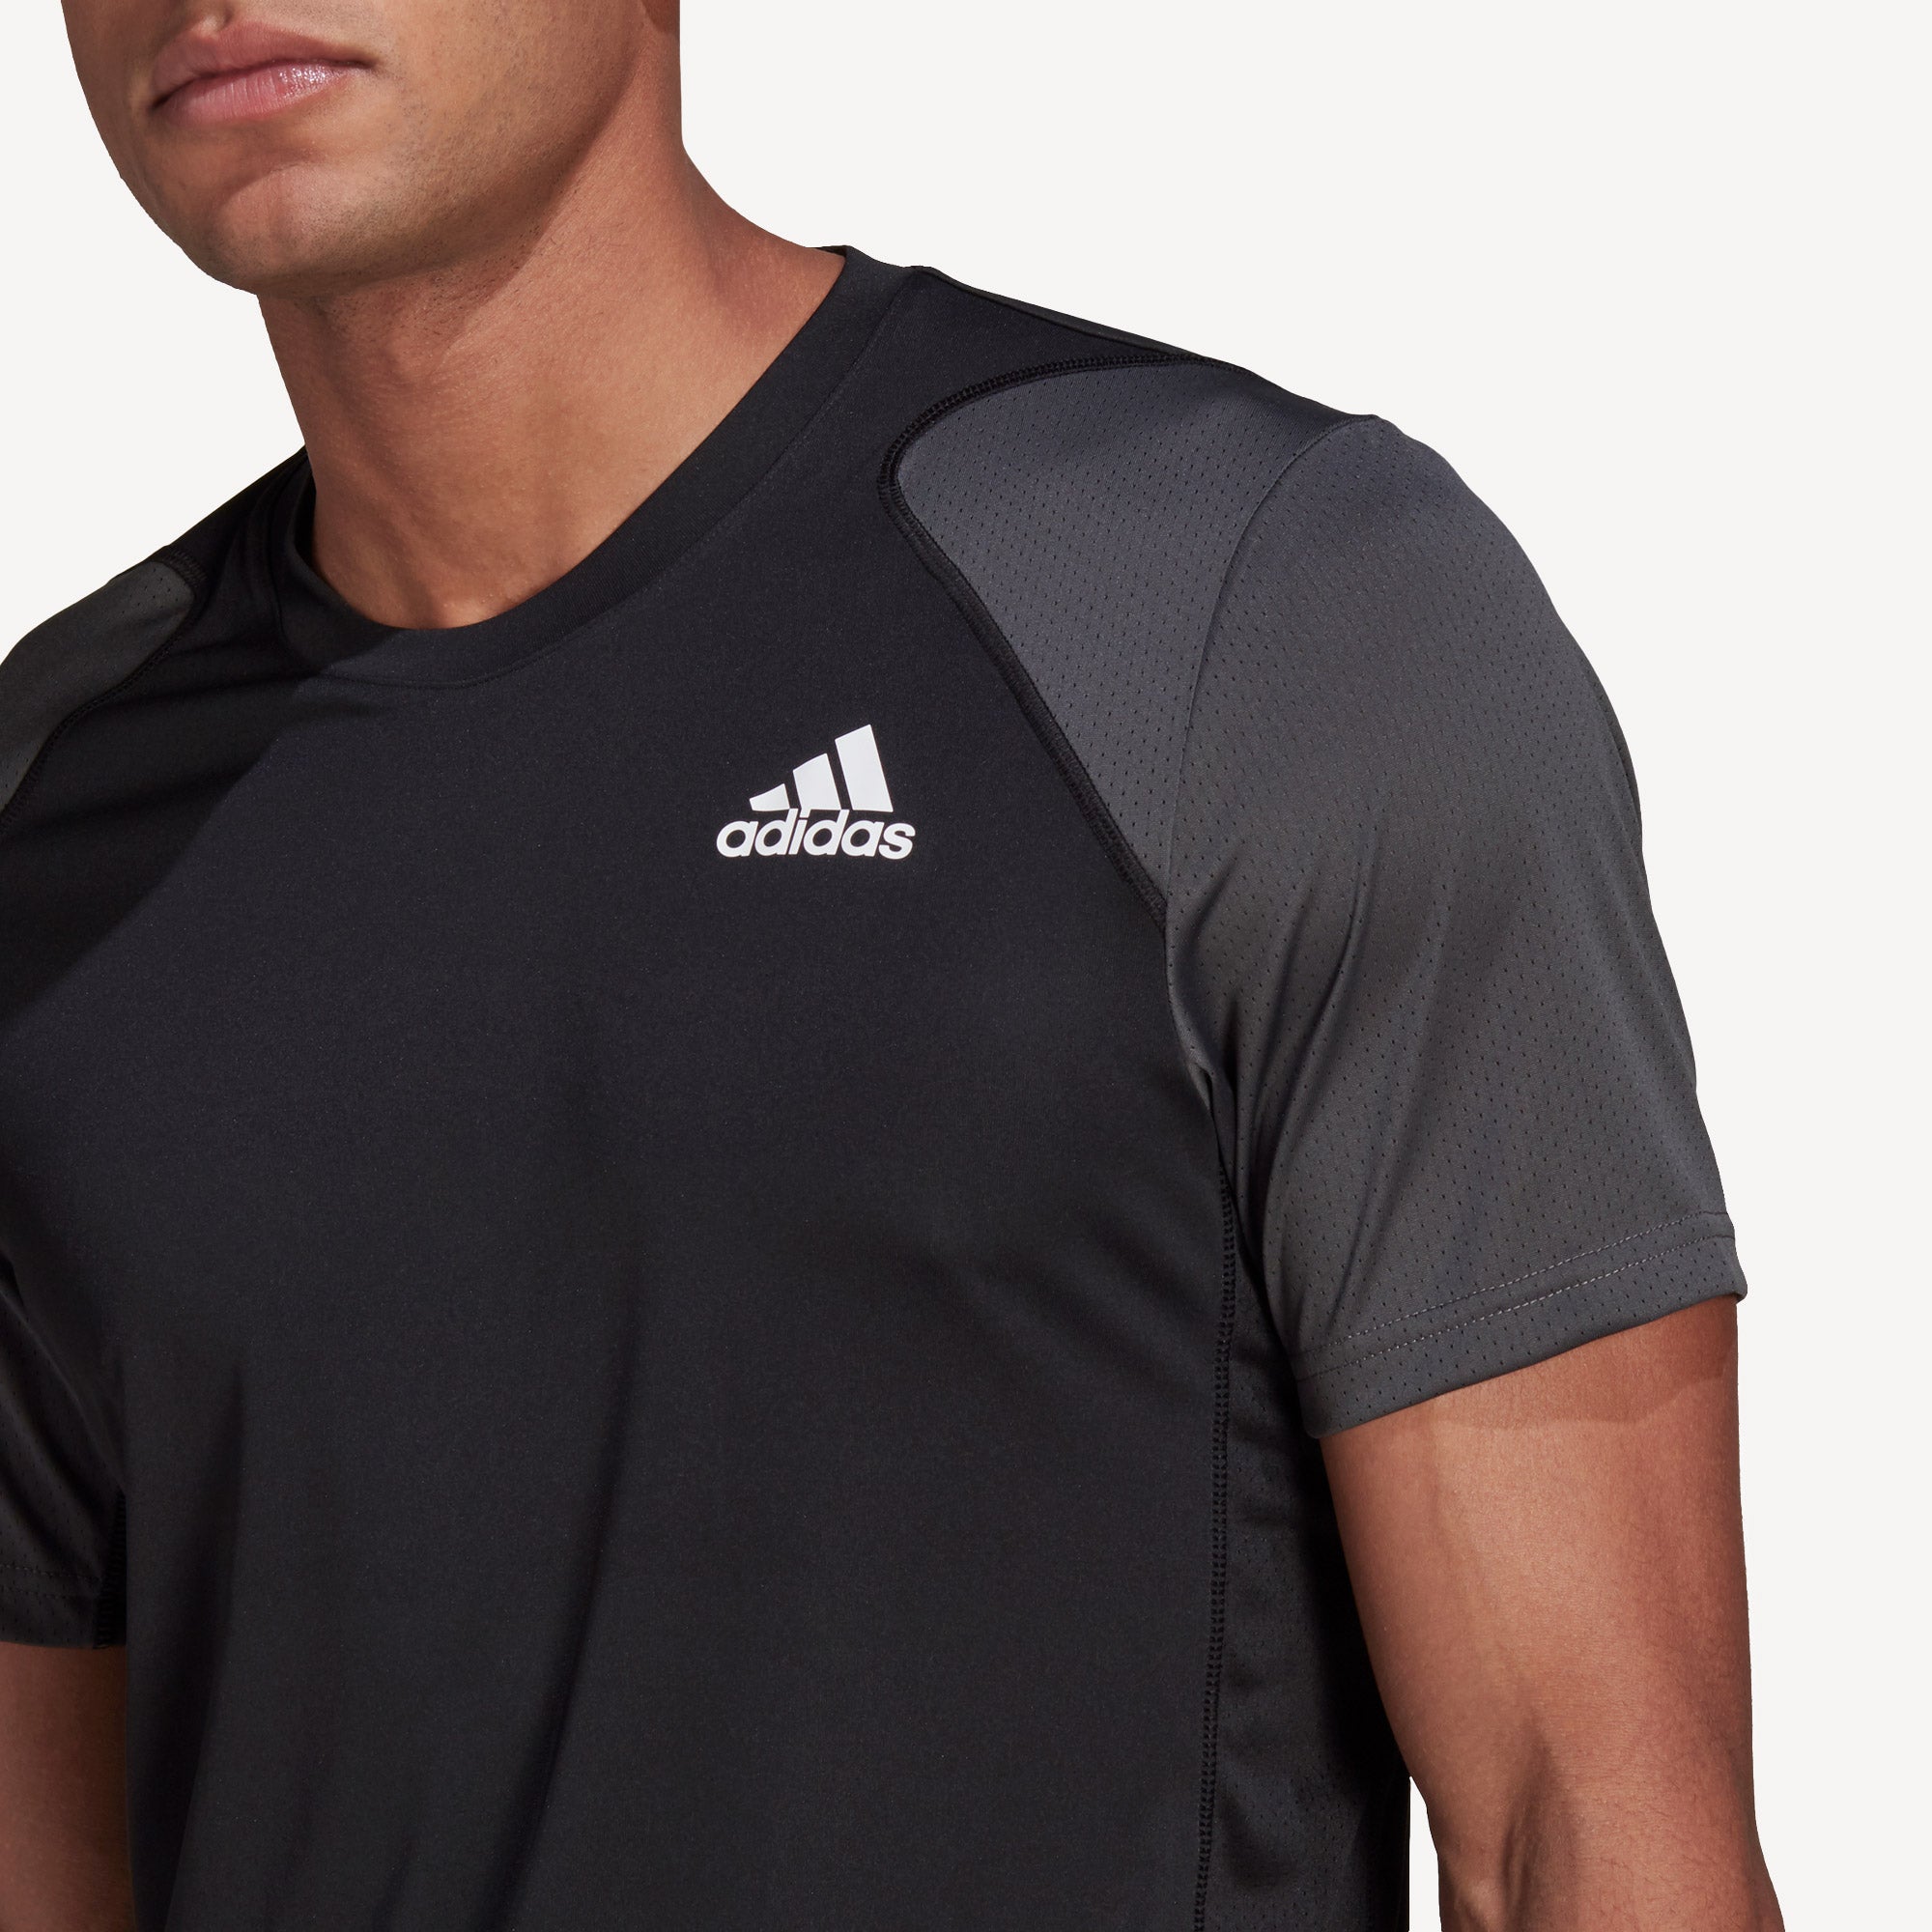 adidas Club Men's Tennis Shirt Black (4)